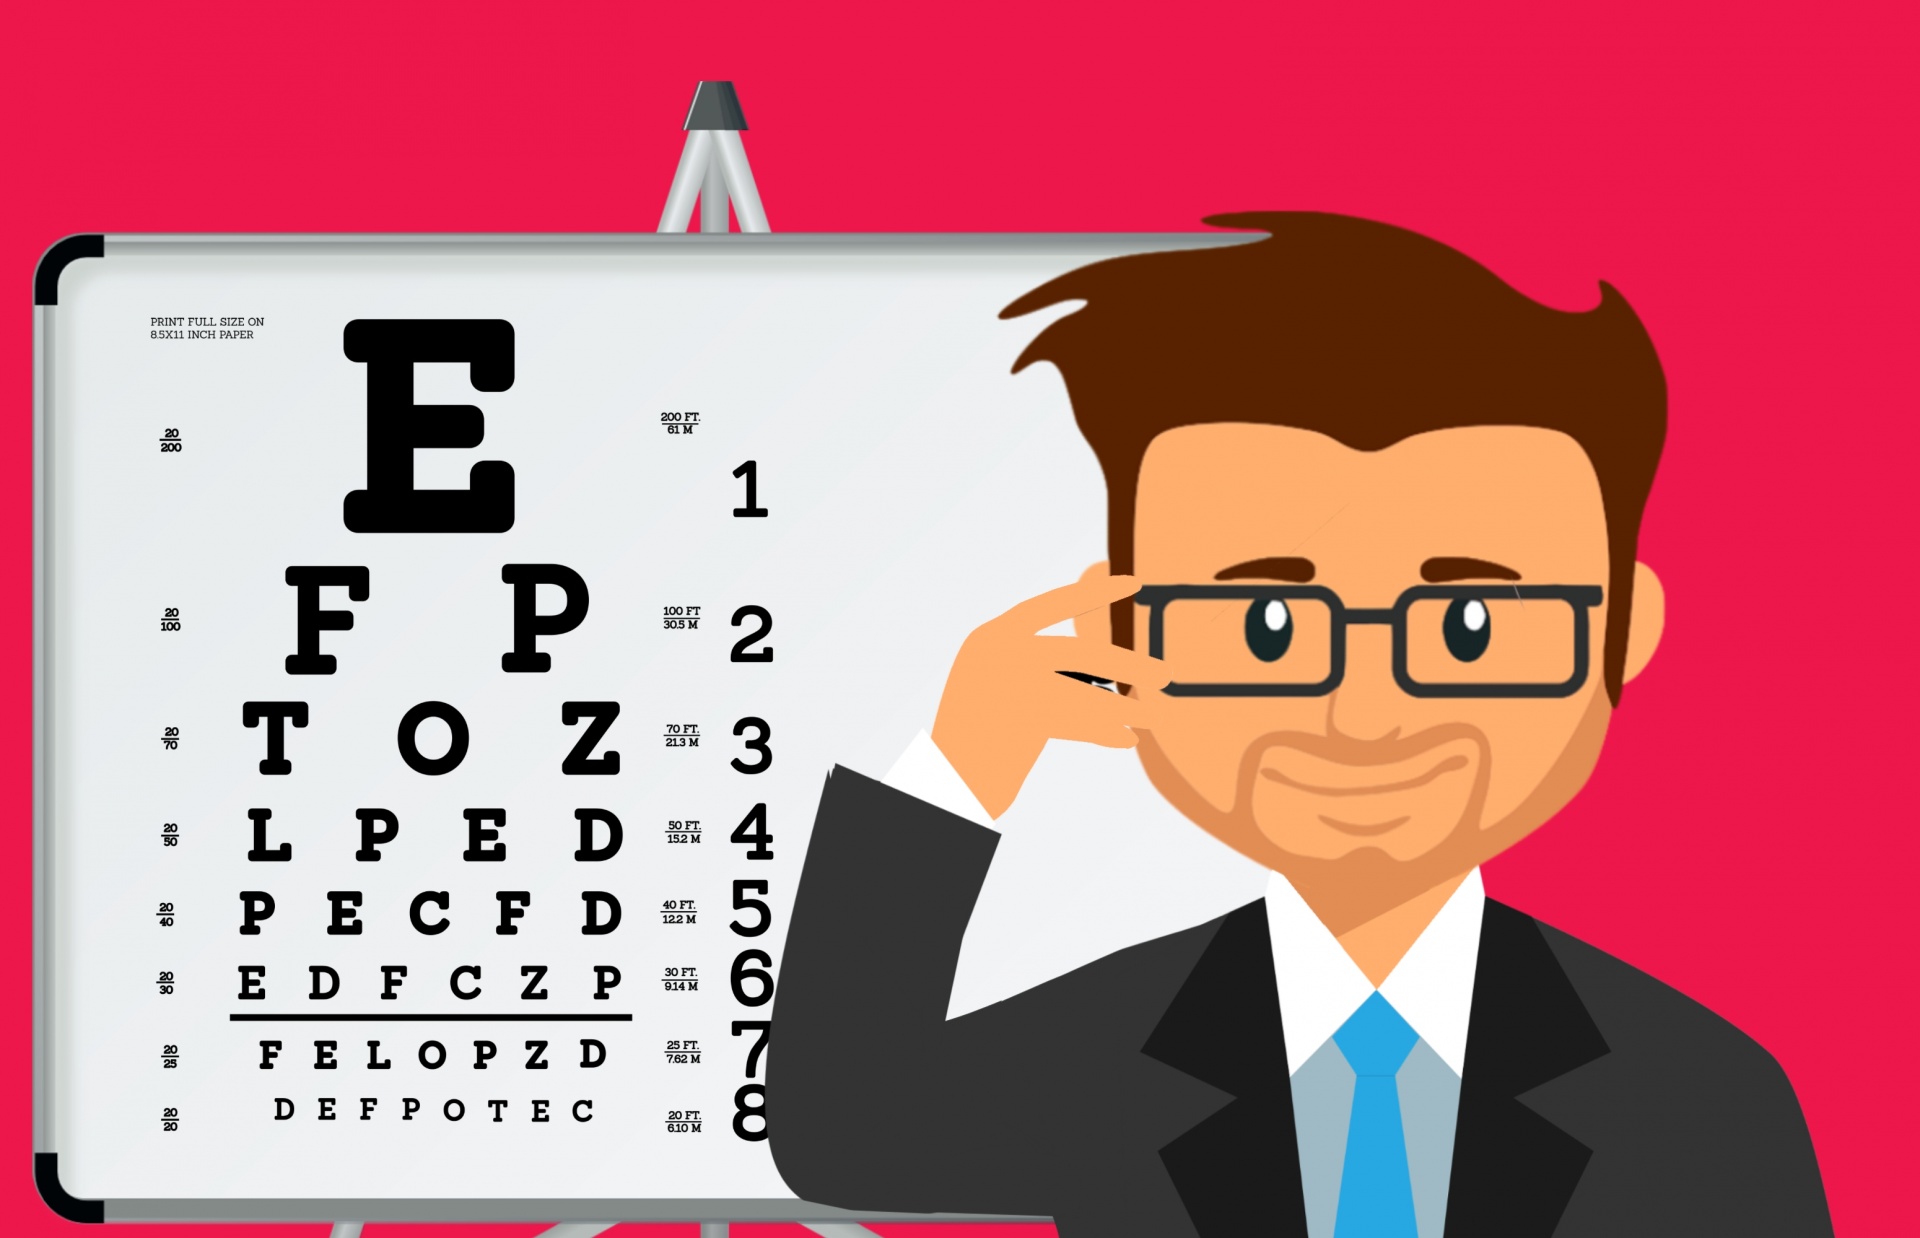 verificați testul ocular puteți restabili vederea cu exerciții oculare